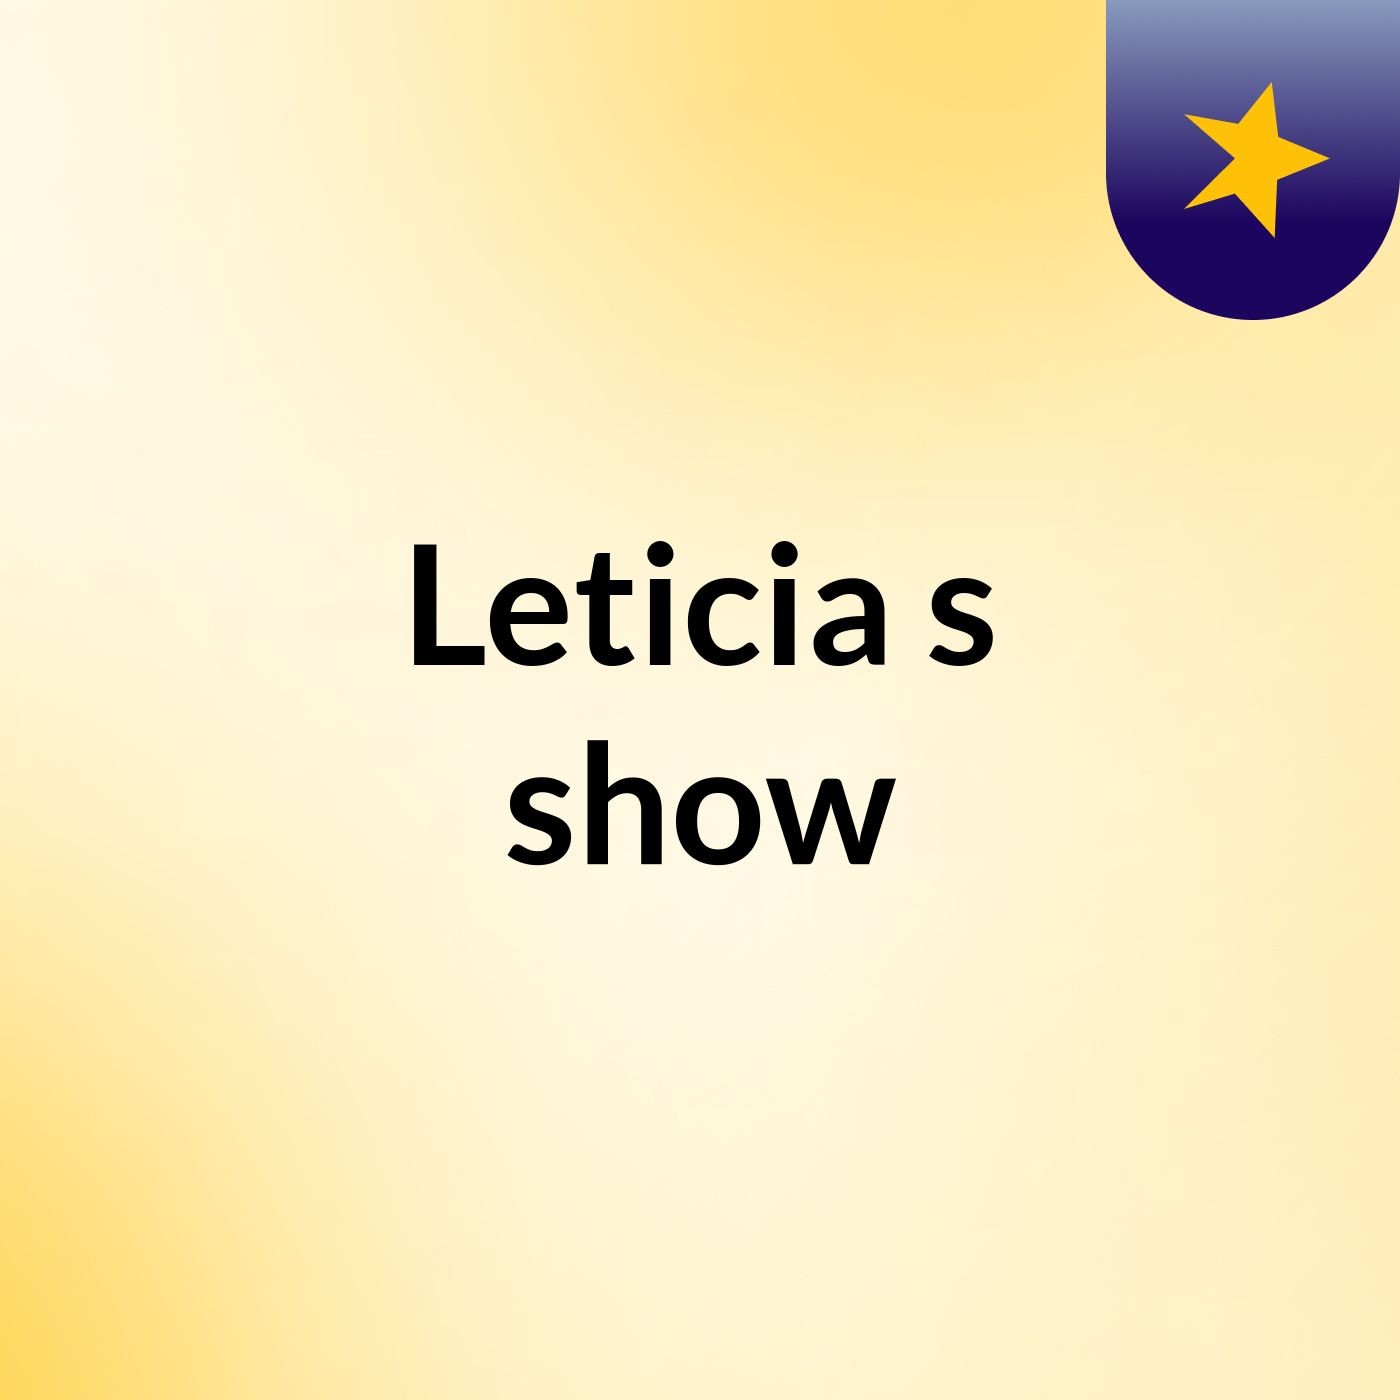 Leticia's show